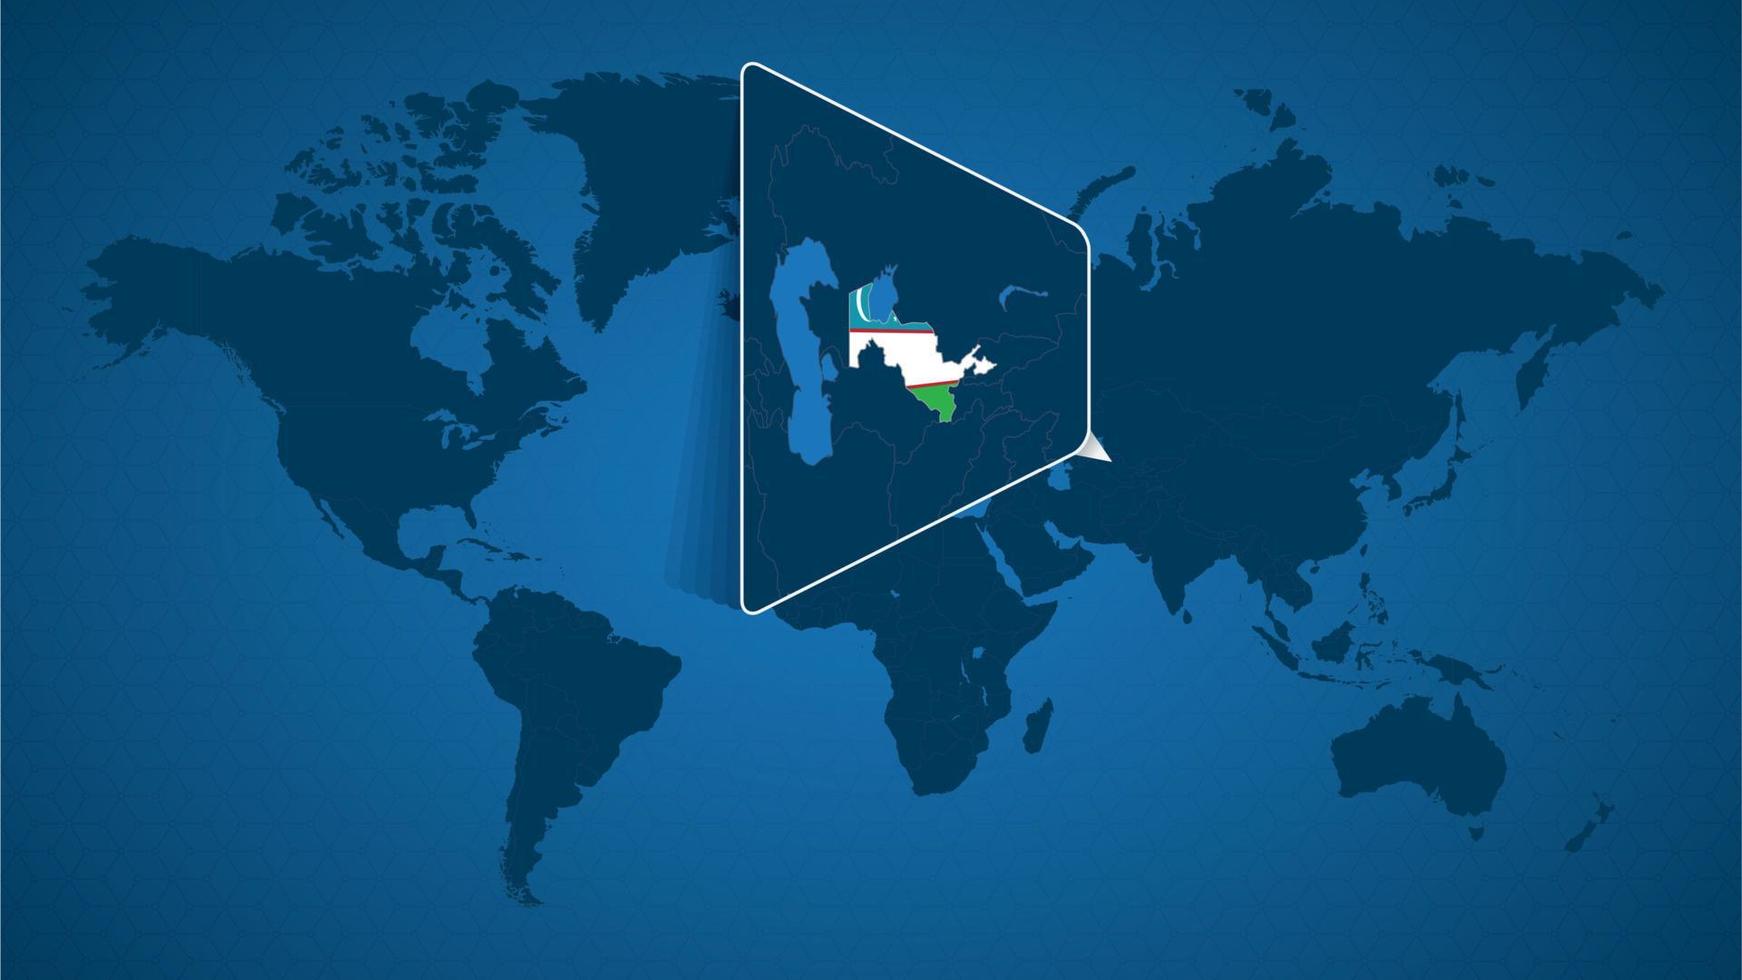 mappa del mondo dettagliata con mappa ingrandita appuntata dell'uzbekistan e dei paesi vicini. vettore